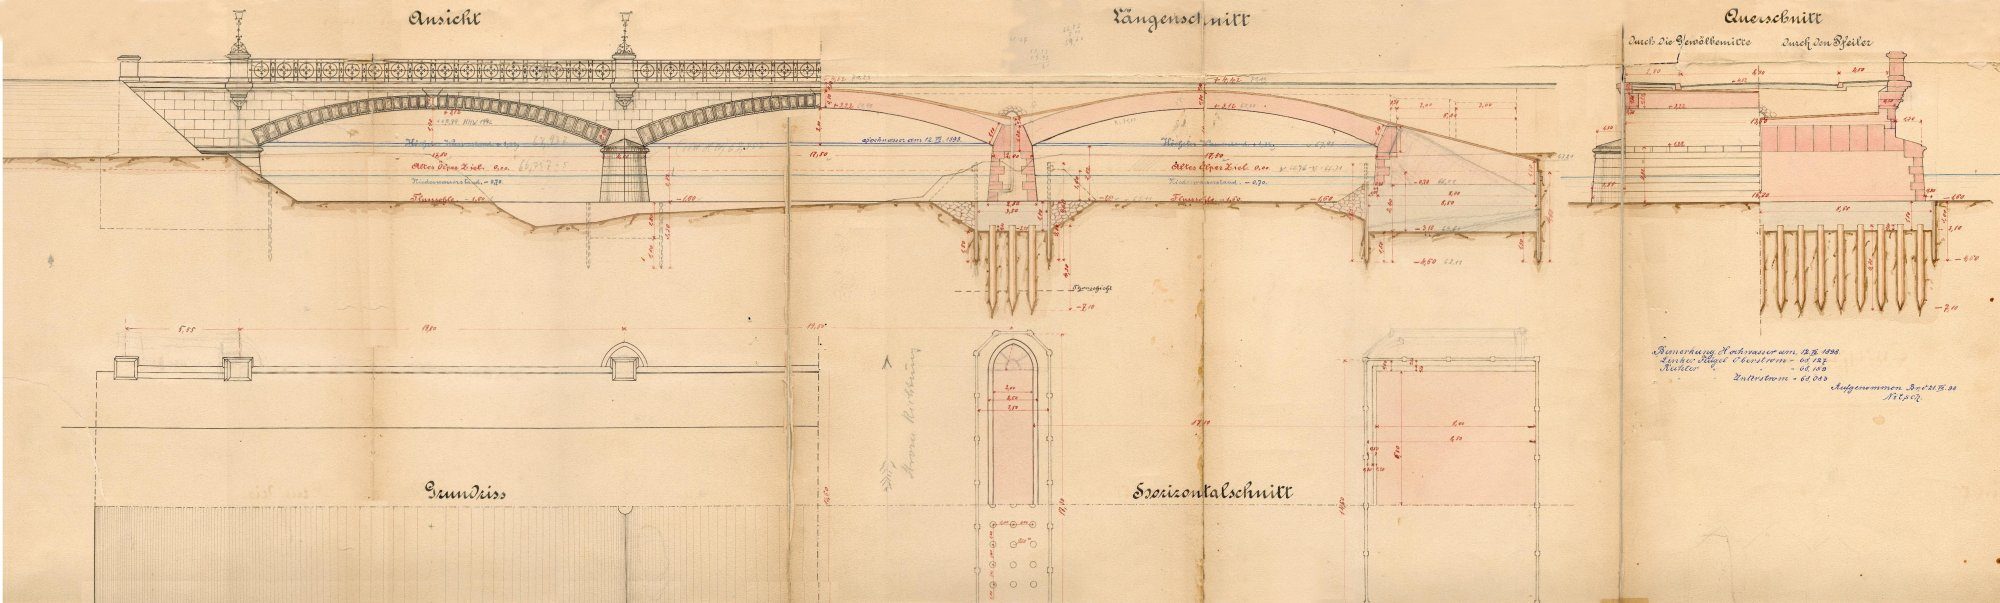 Wendenringbrücke, Ausführungsplan, Ansicht mit Schnitt, 1889